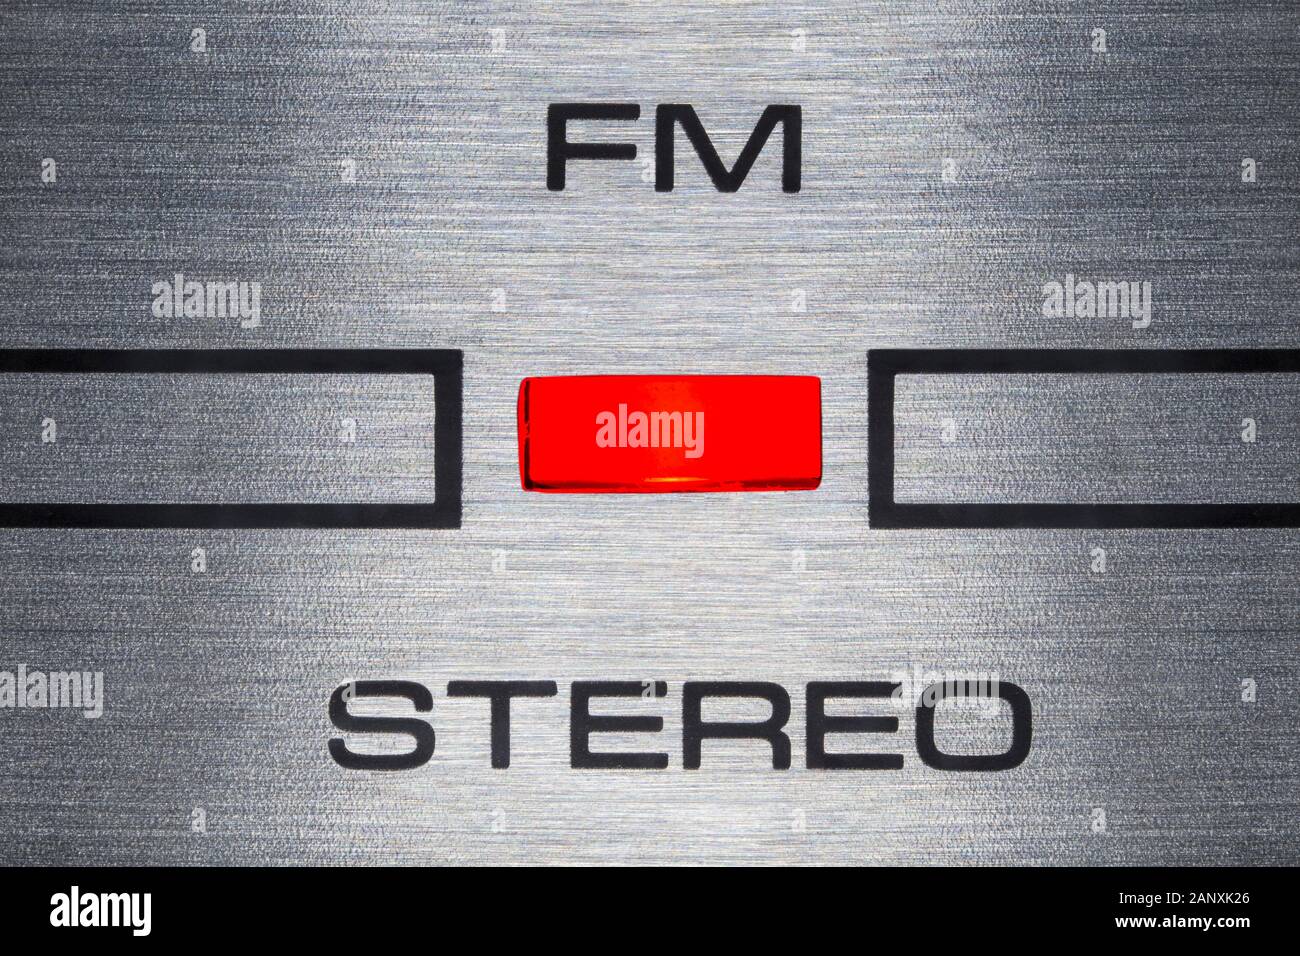 Cerrar la macro fotografía de luz indicadora de FM estéreo en vintage boombox. Foto de stock